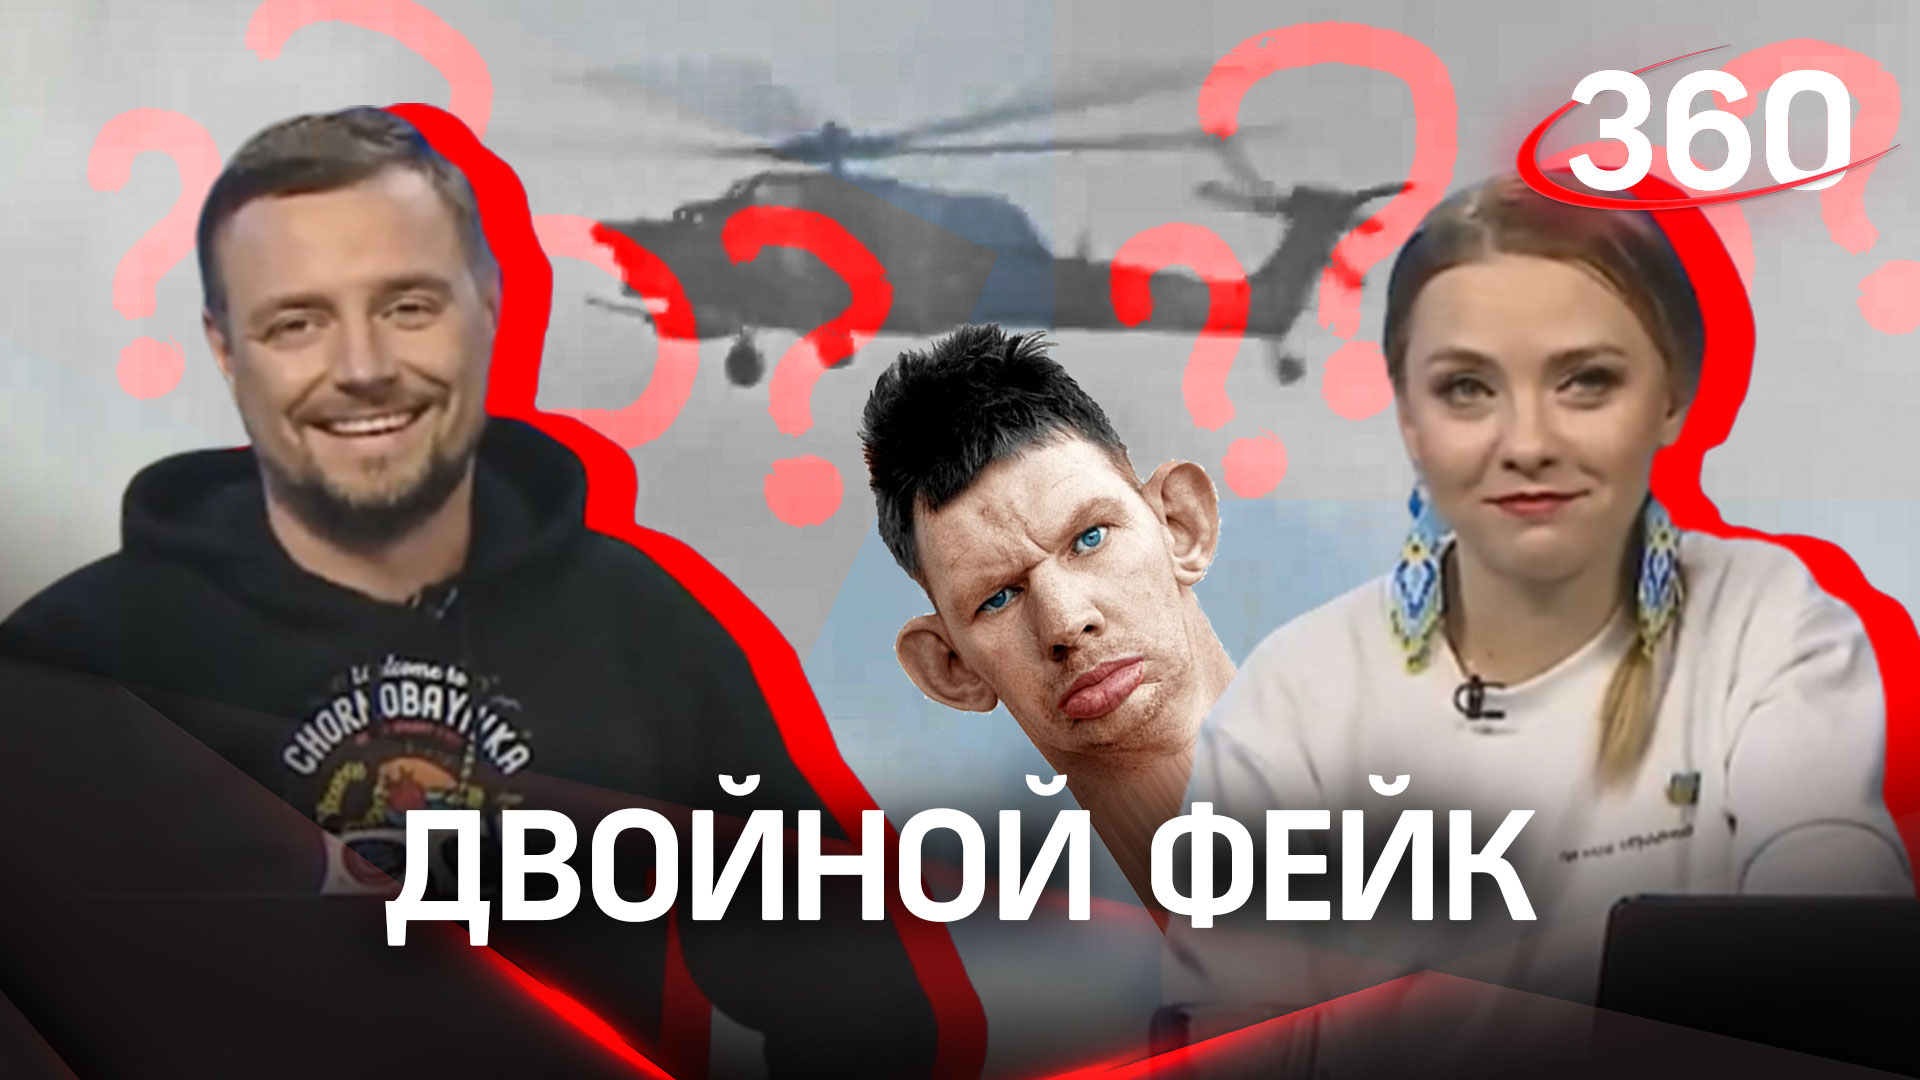 Новый фейк украинских СМИ: ролик с падением российского МИ-28 оказался творением Глада Валакаса